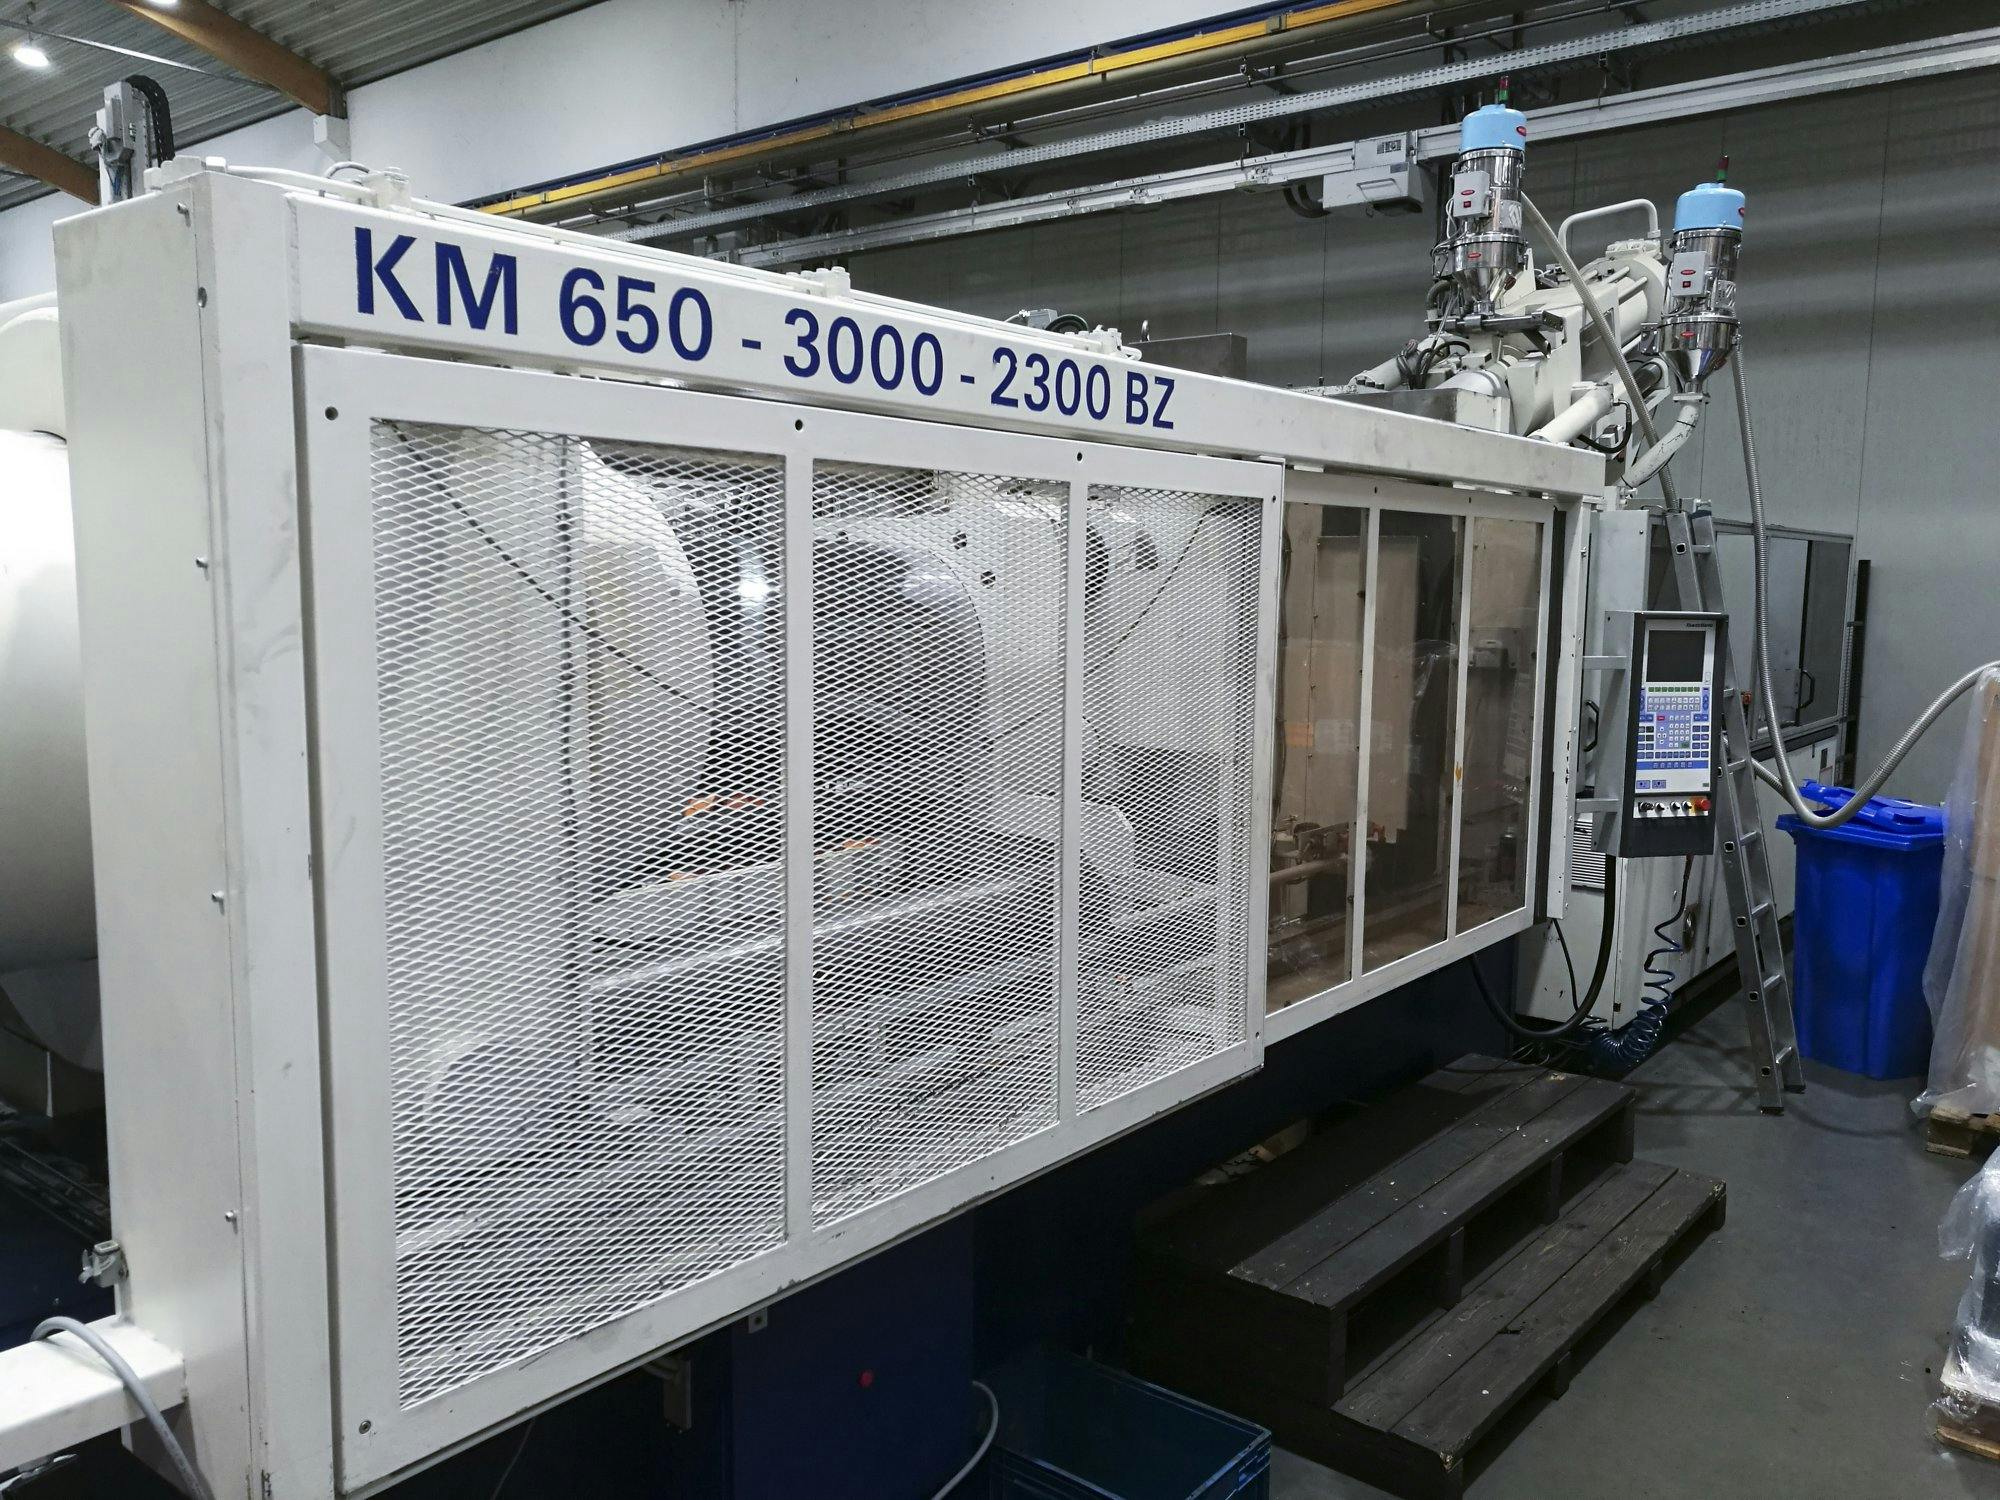 1 Krauss Maffei-maskinen sedd från vänster650-3000-2300 BZ